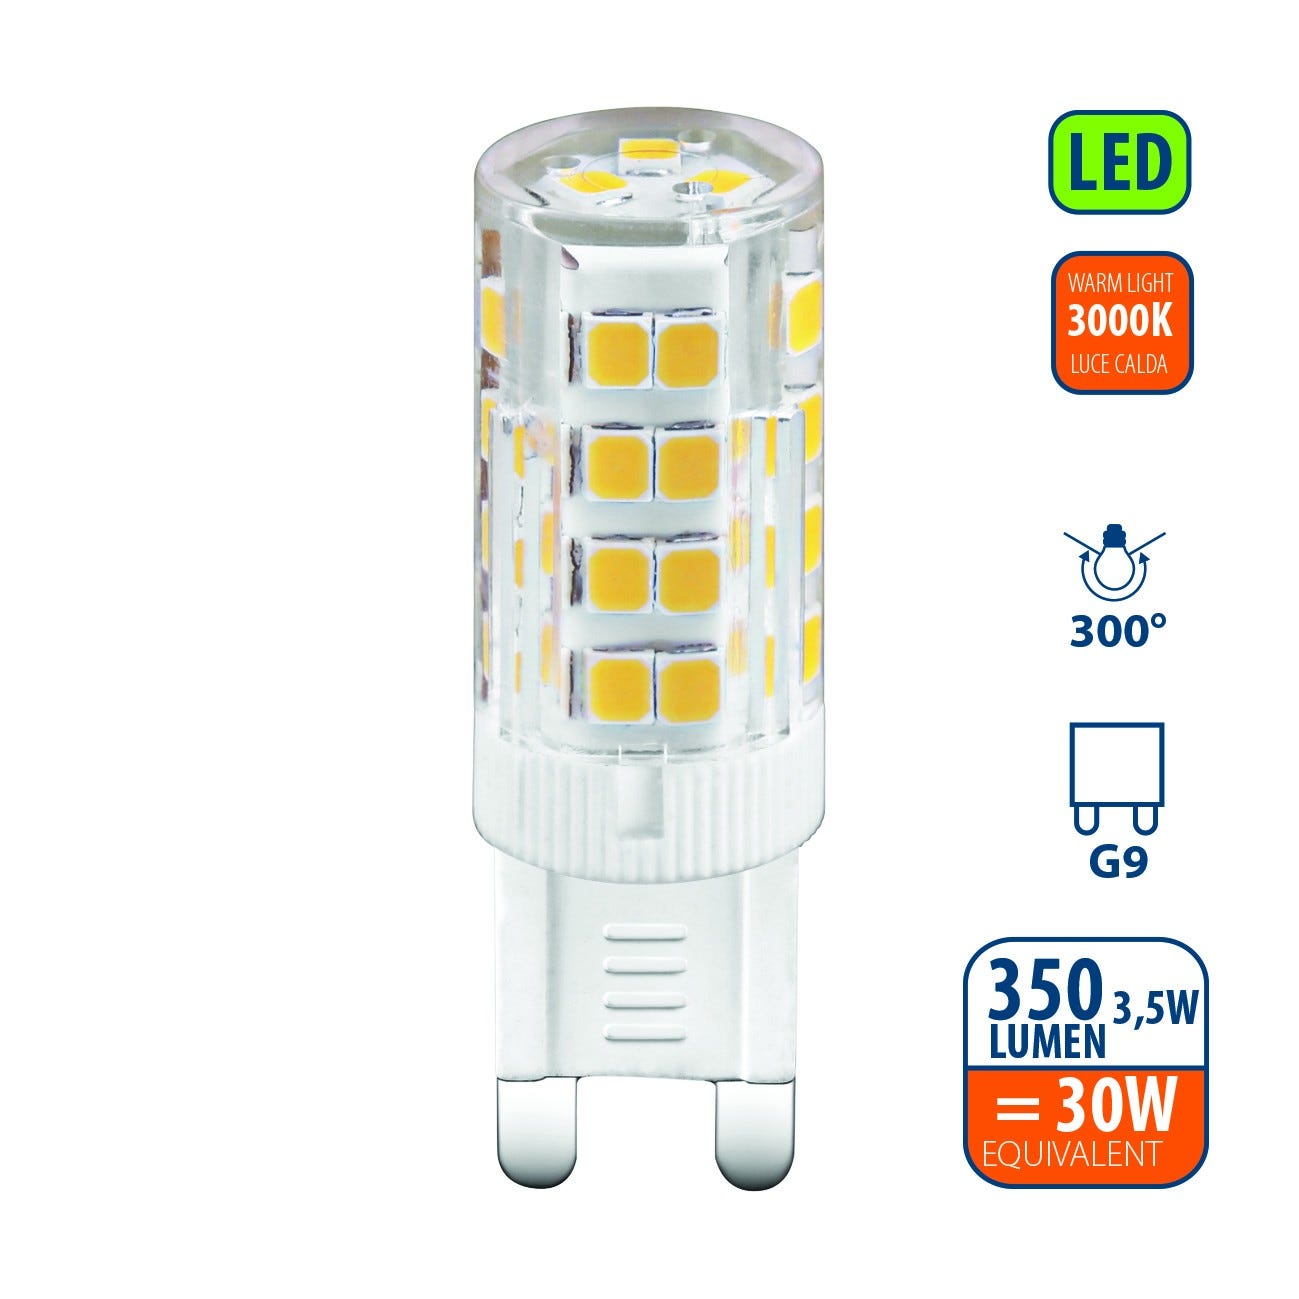 Ampoule LED SMD, Capsule G9, 3.5W / 350lm, culot G9, 3000K